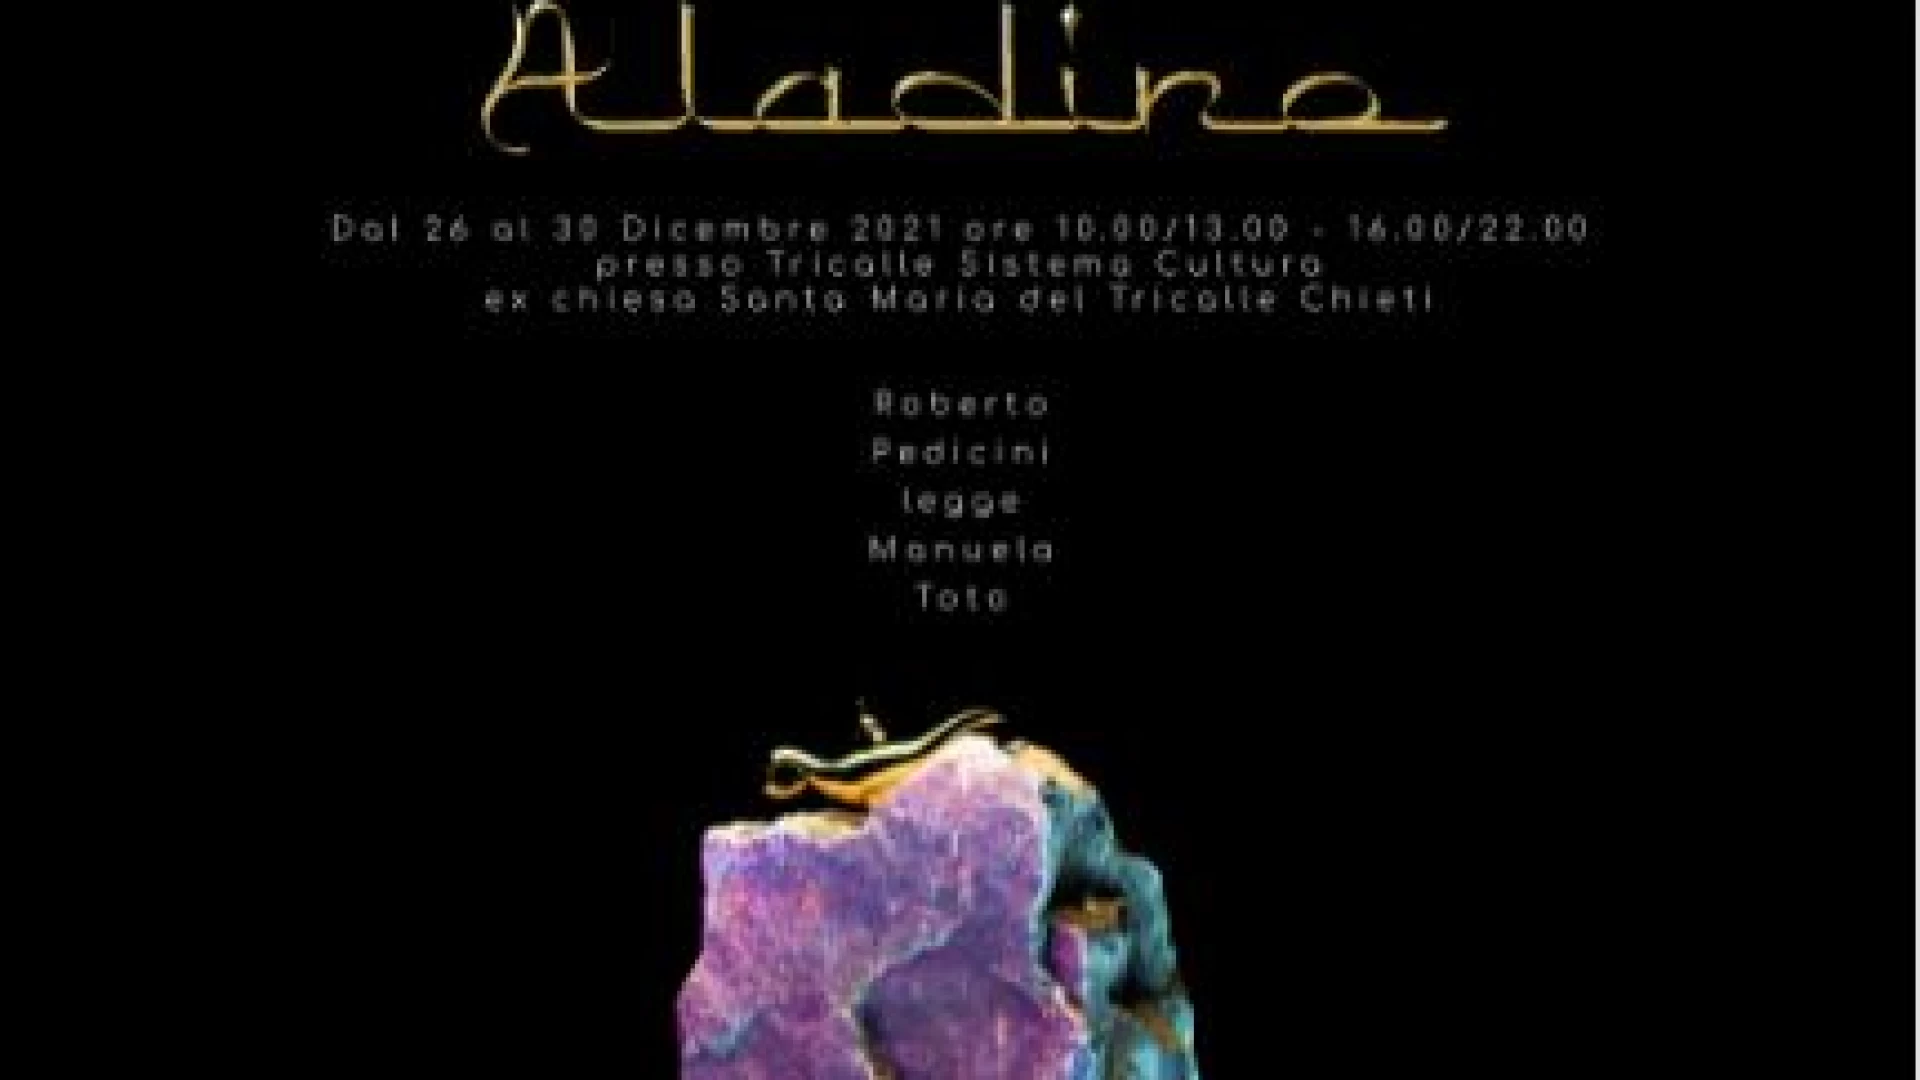 Chieti: dal 26 al 30 dicembre l’installazione sonora Aladino. Evento ad ingresso libero.